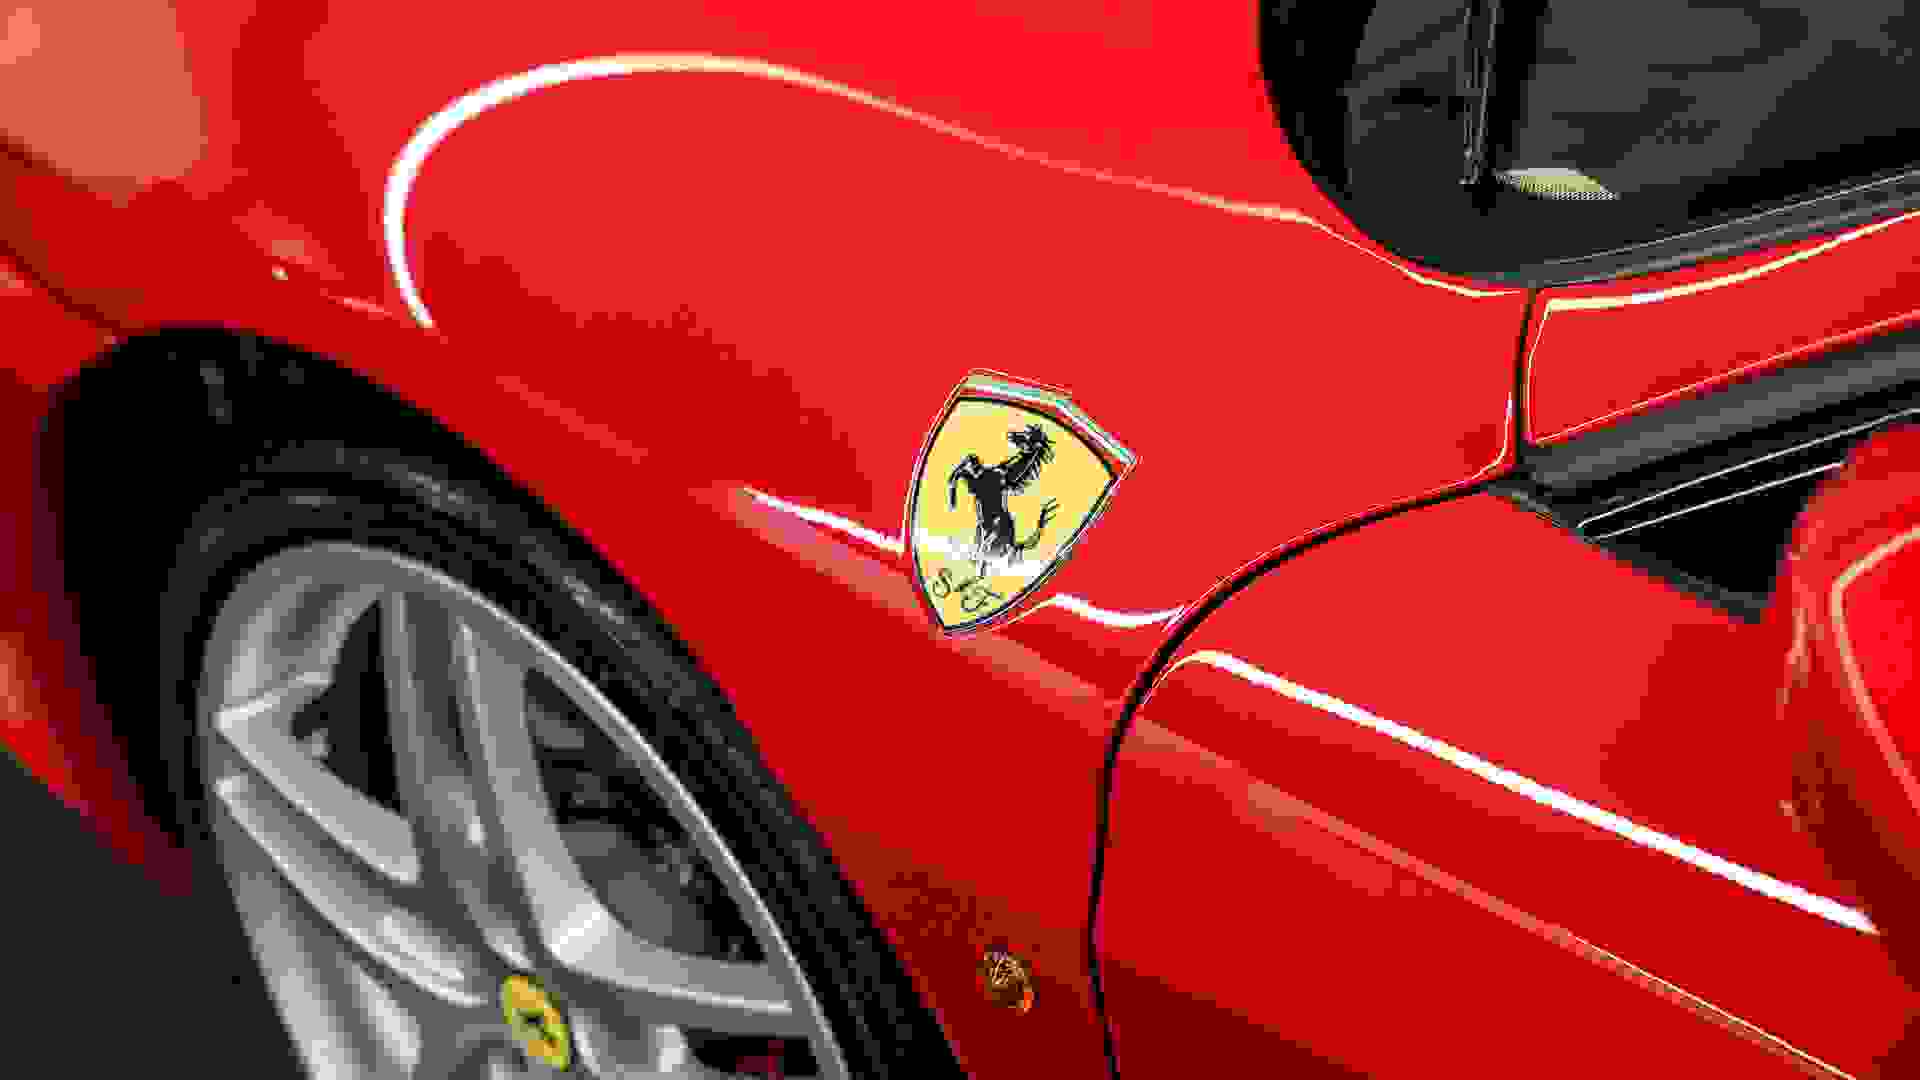 Ferrari F430 Photo 4efd96e3-6f31-4cb3-b7a9-60a735a4abe4.jpg